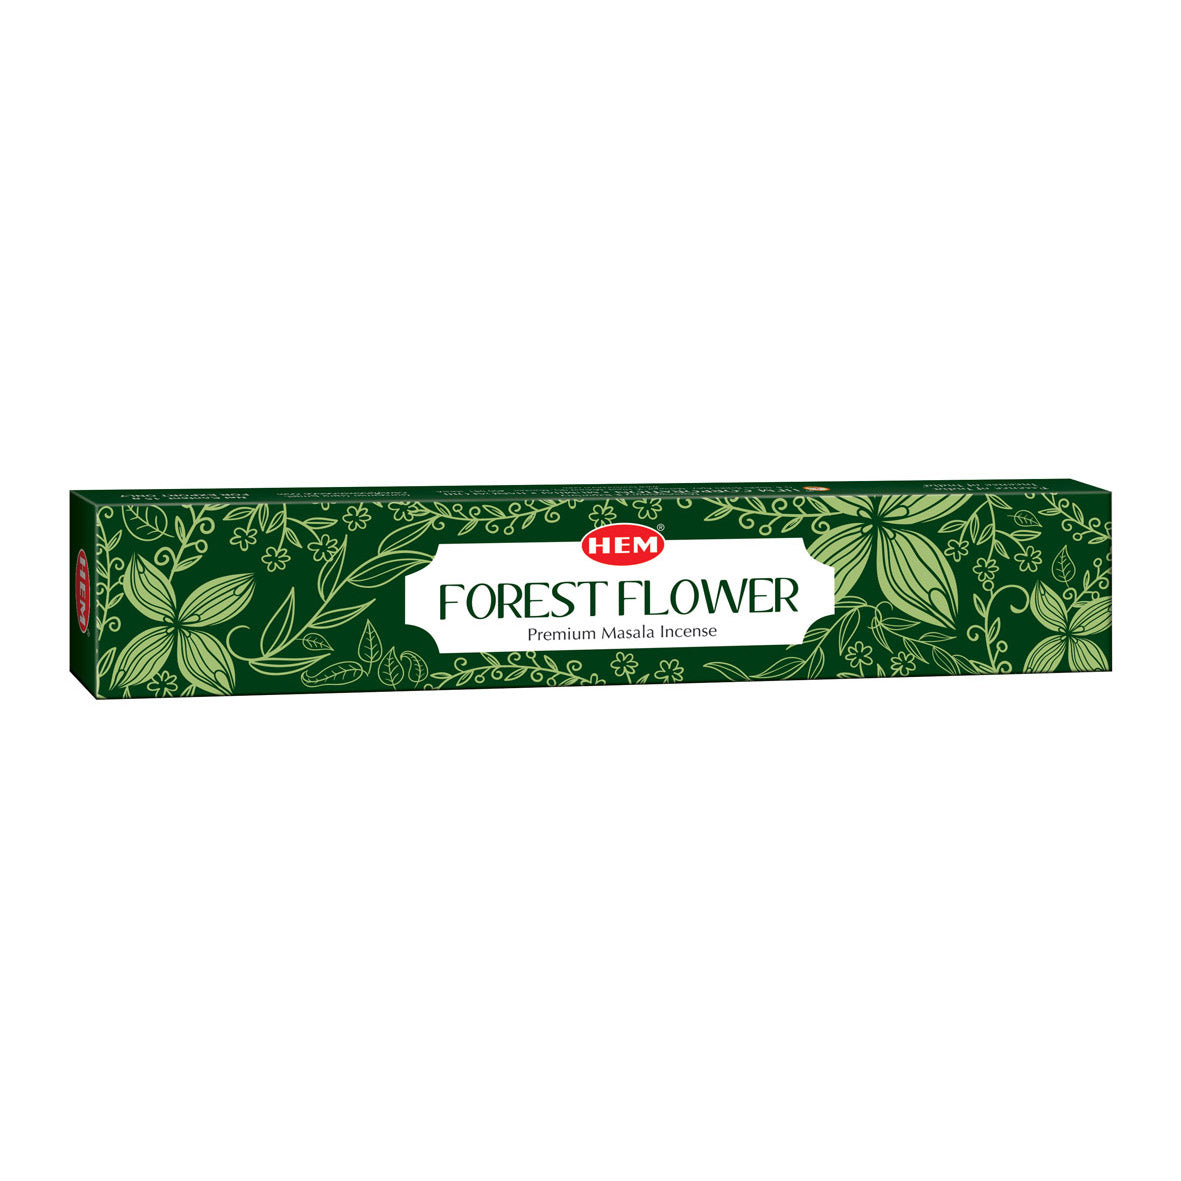 forest-flower-premium-masala-incense-sticks